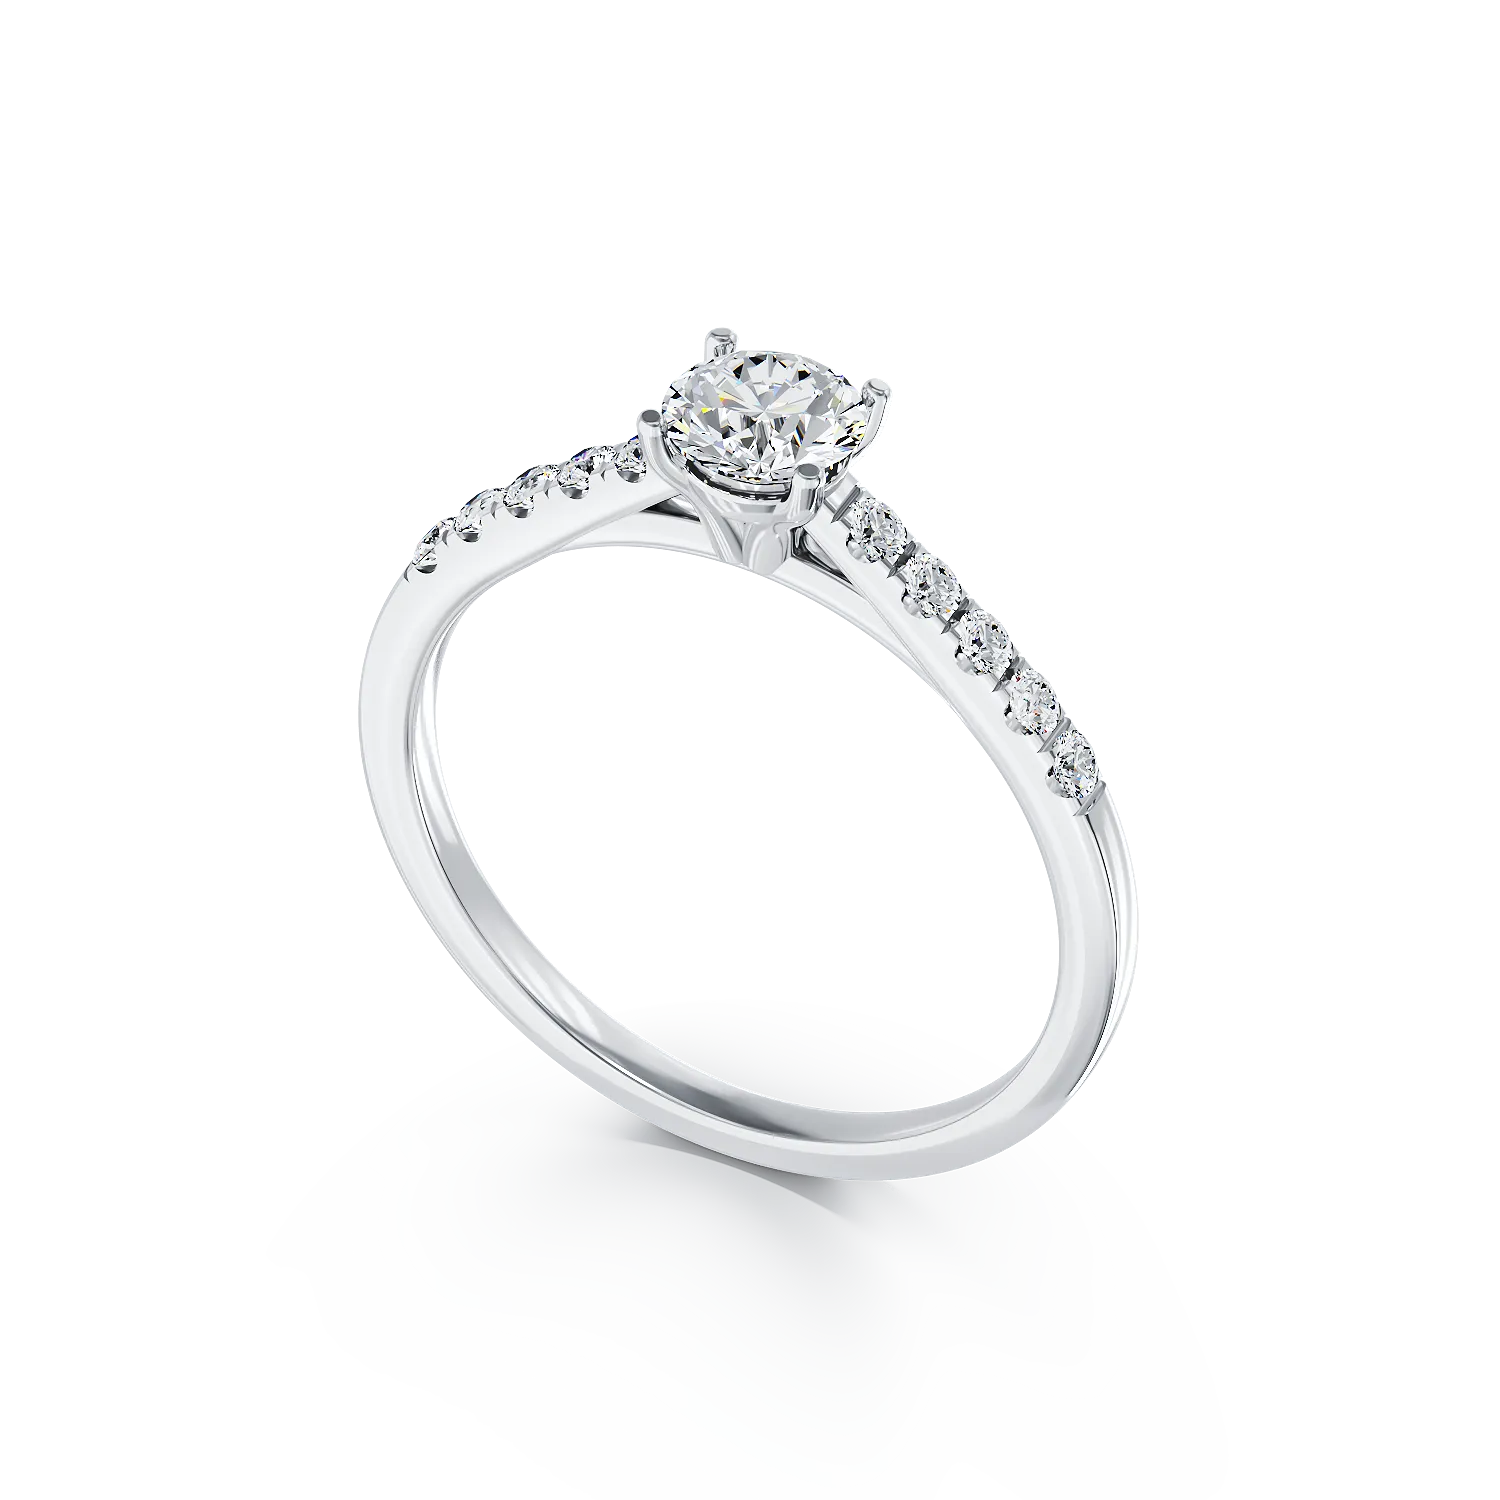 Eljegyzési gyűrű 18K-os fehér aranyból 0,4ct gyémánttal és 0,14ct gyémántokkal. Gramm: 3.15